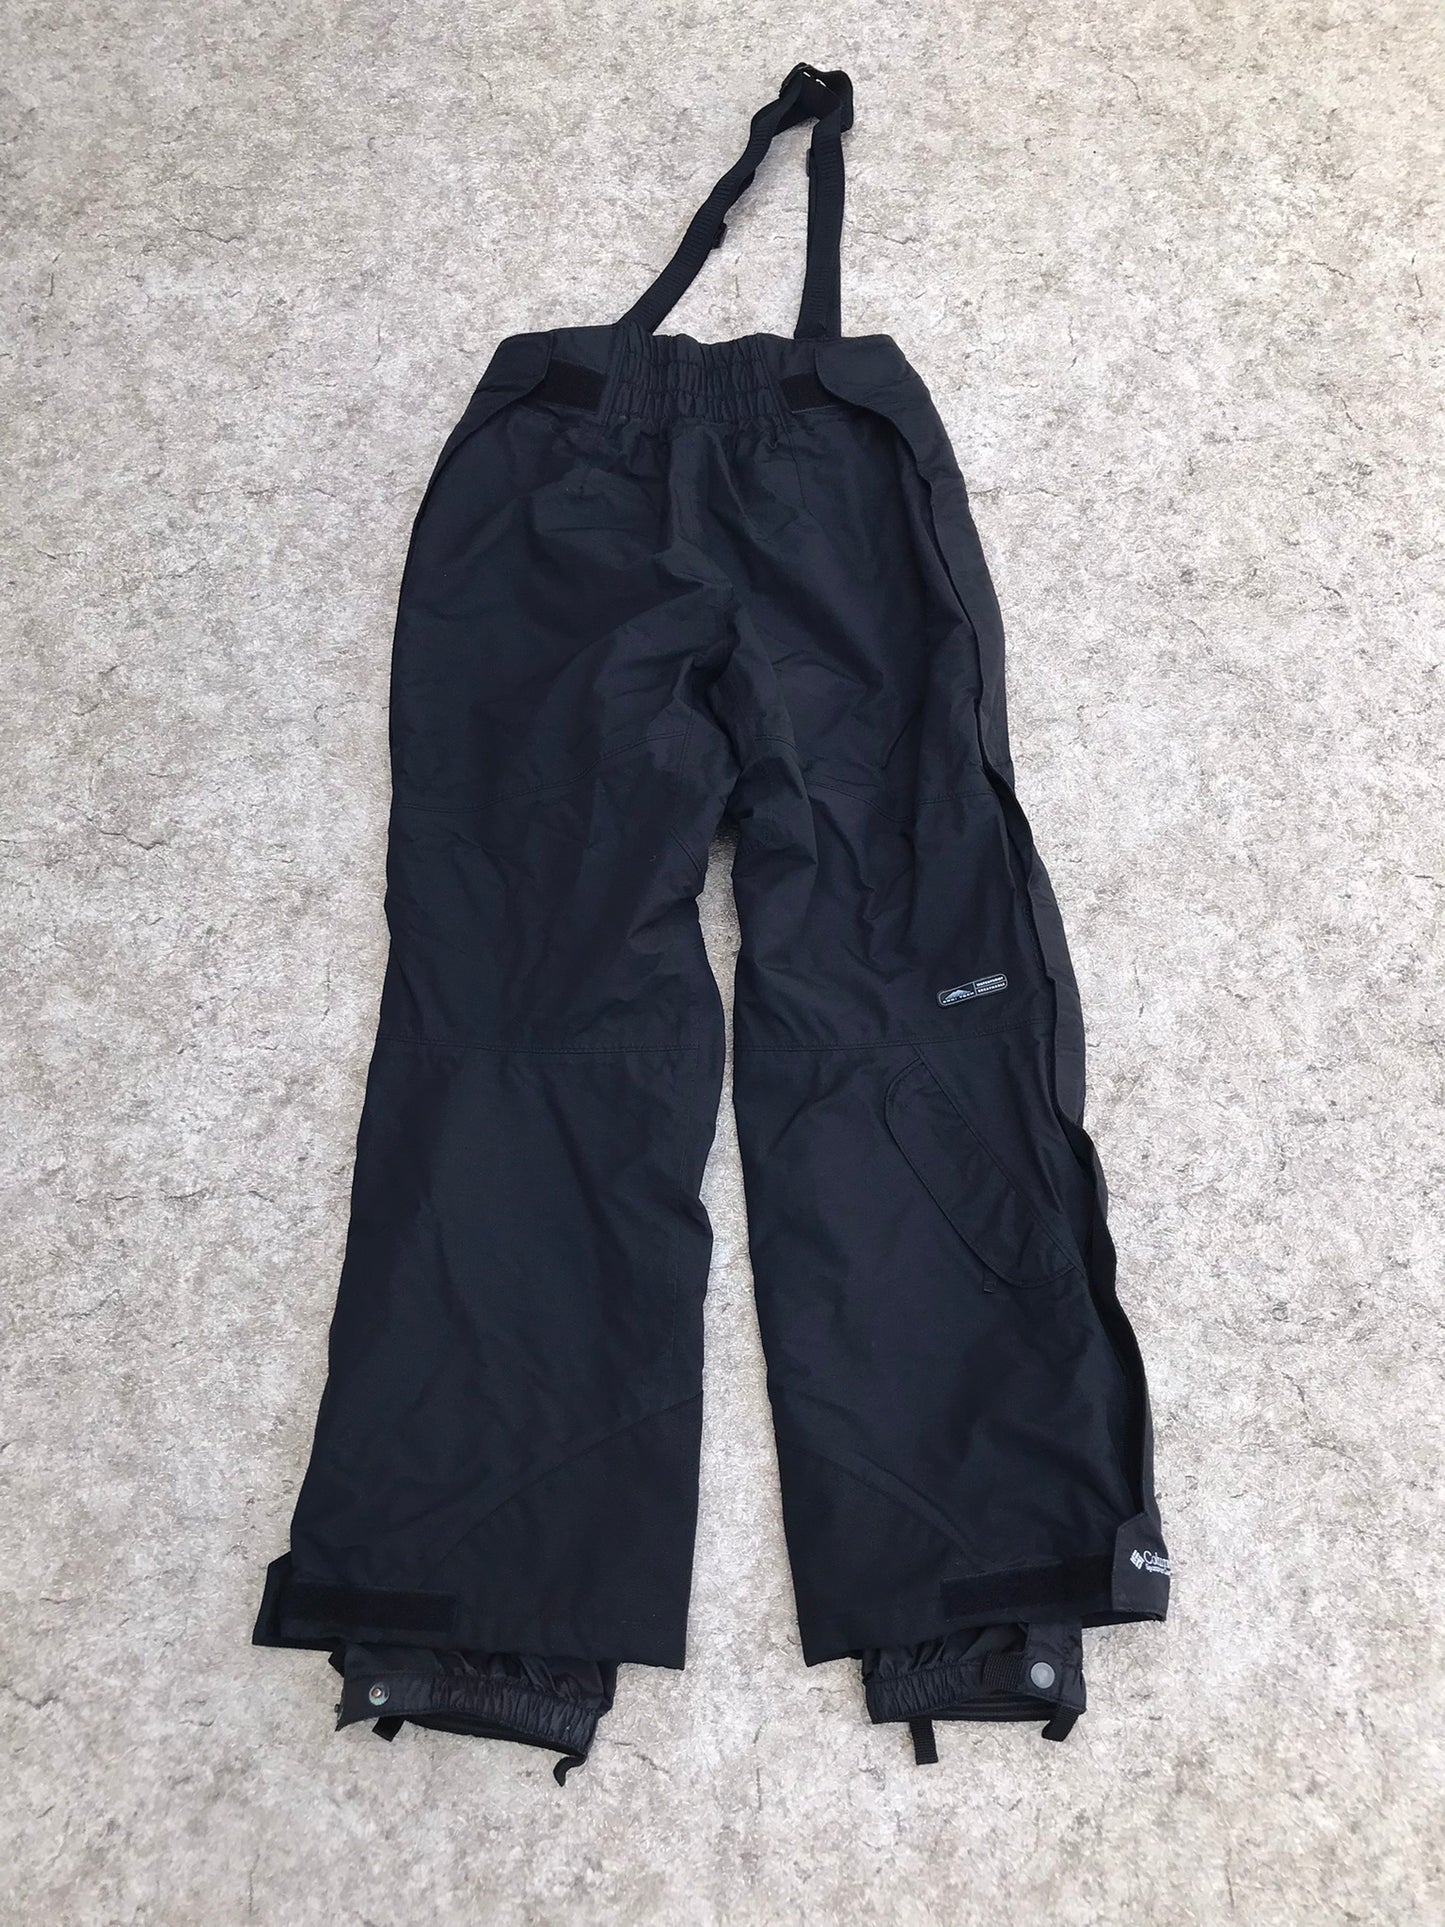 Snow Pants Ladies Size Medium Columbia Titanium Waterproof Full Zippers Up Both Legs Suspenders Black As New